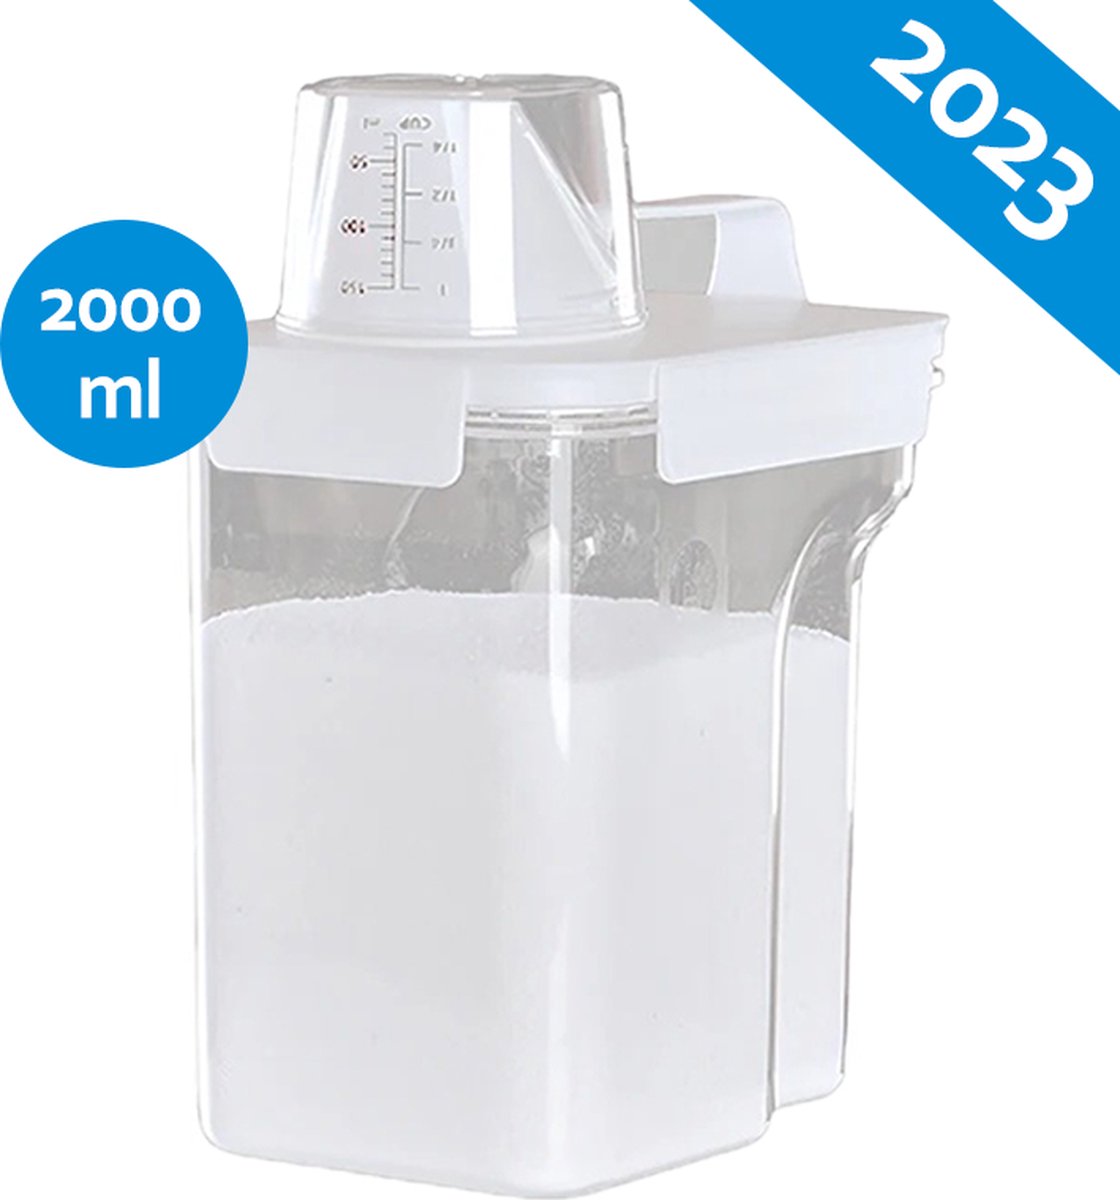 Deluqse Waspoeder Opbergdoos - 2000ml - Acryl - Waspoederbox - Wasmiddel Bewaarbox - Poedercontainer - Wasmiddel Bewaardoos - Waspoeder Doos